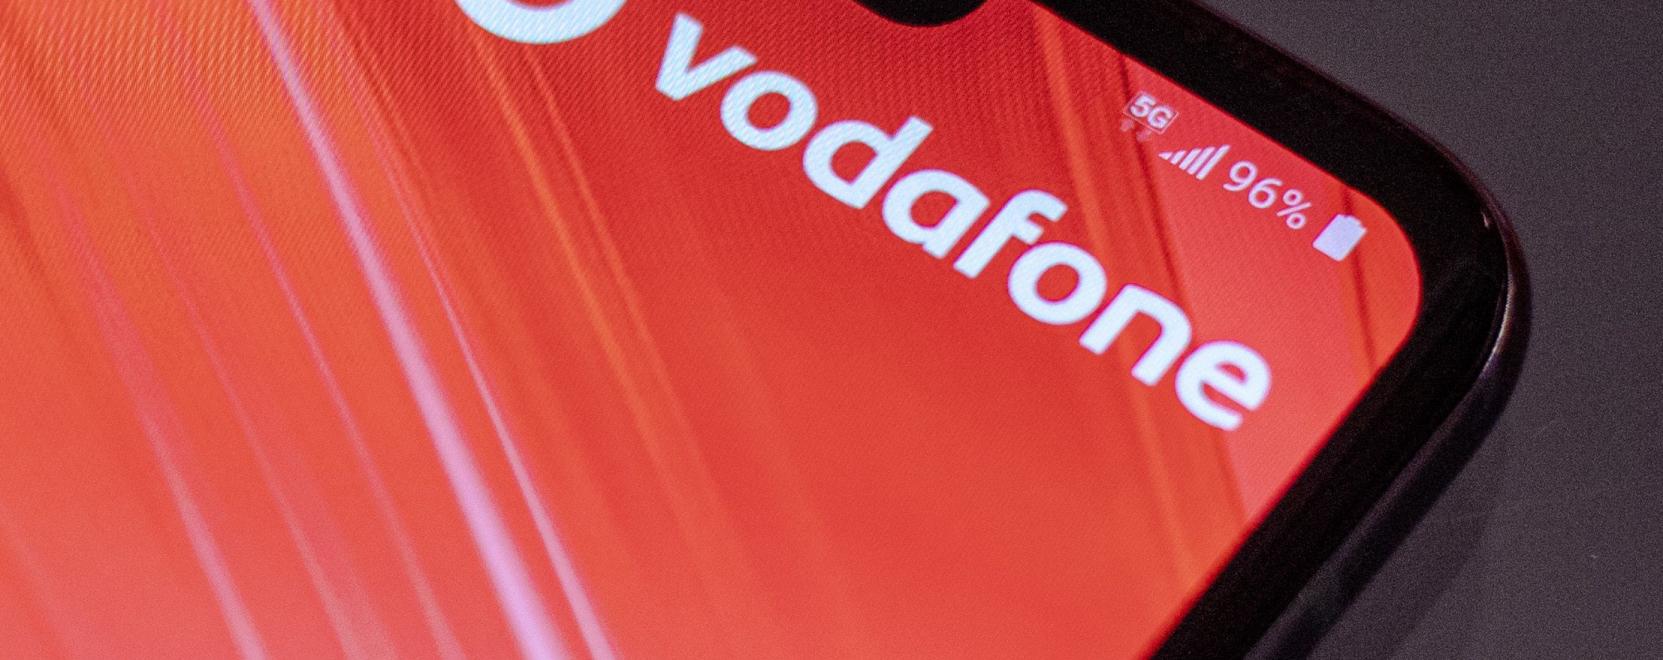 5G demóval várja a Vodafone az ITU kiállítás látogatóit